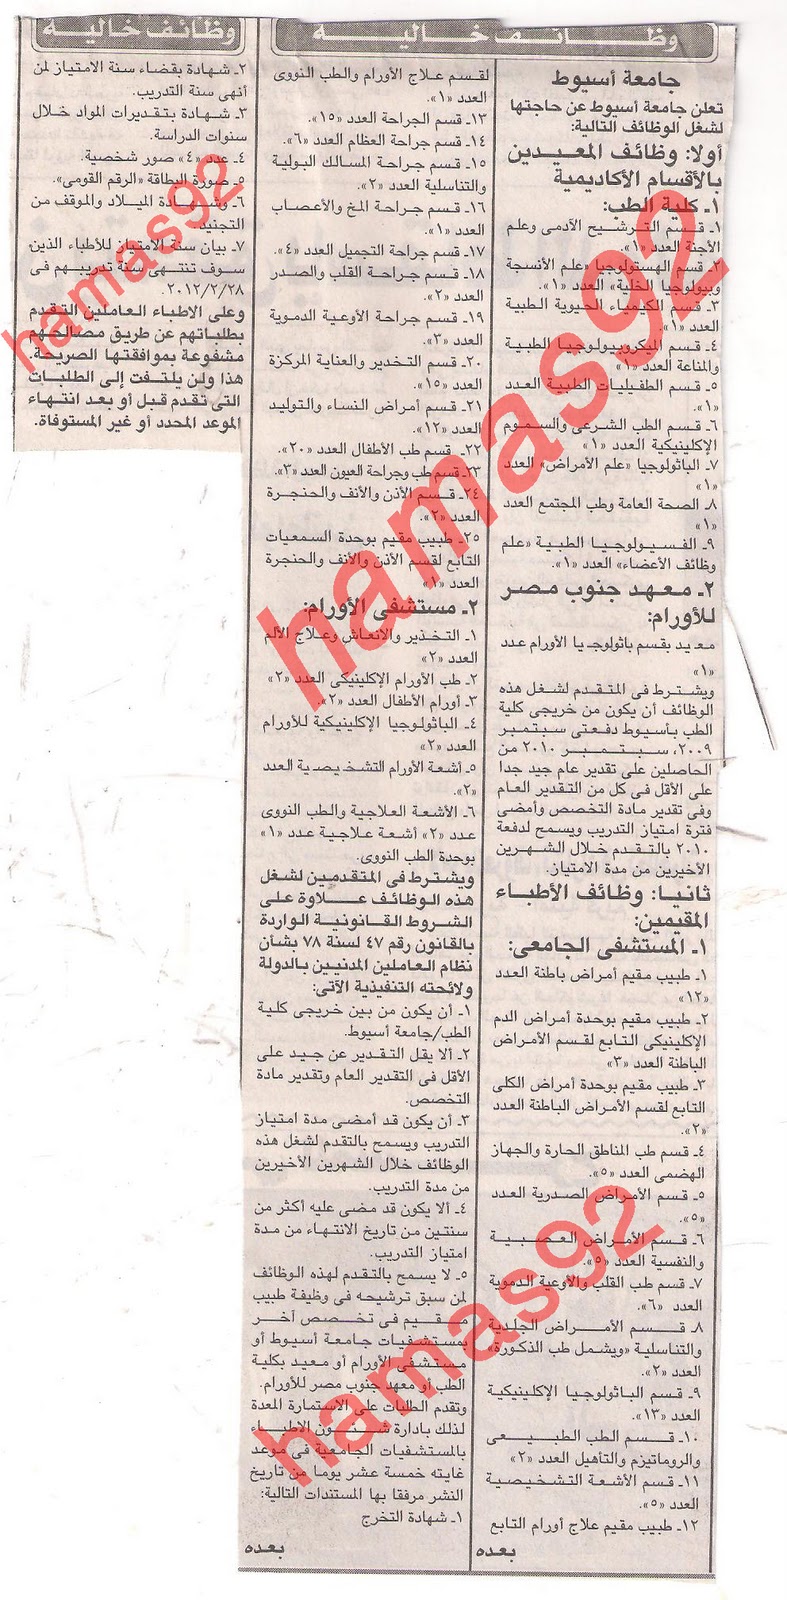 اعلانات وظائف جريدة الاخبار الاربعاء 4 يناير 2012  Picture+002